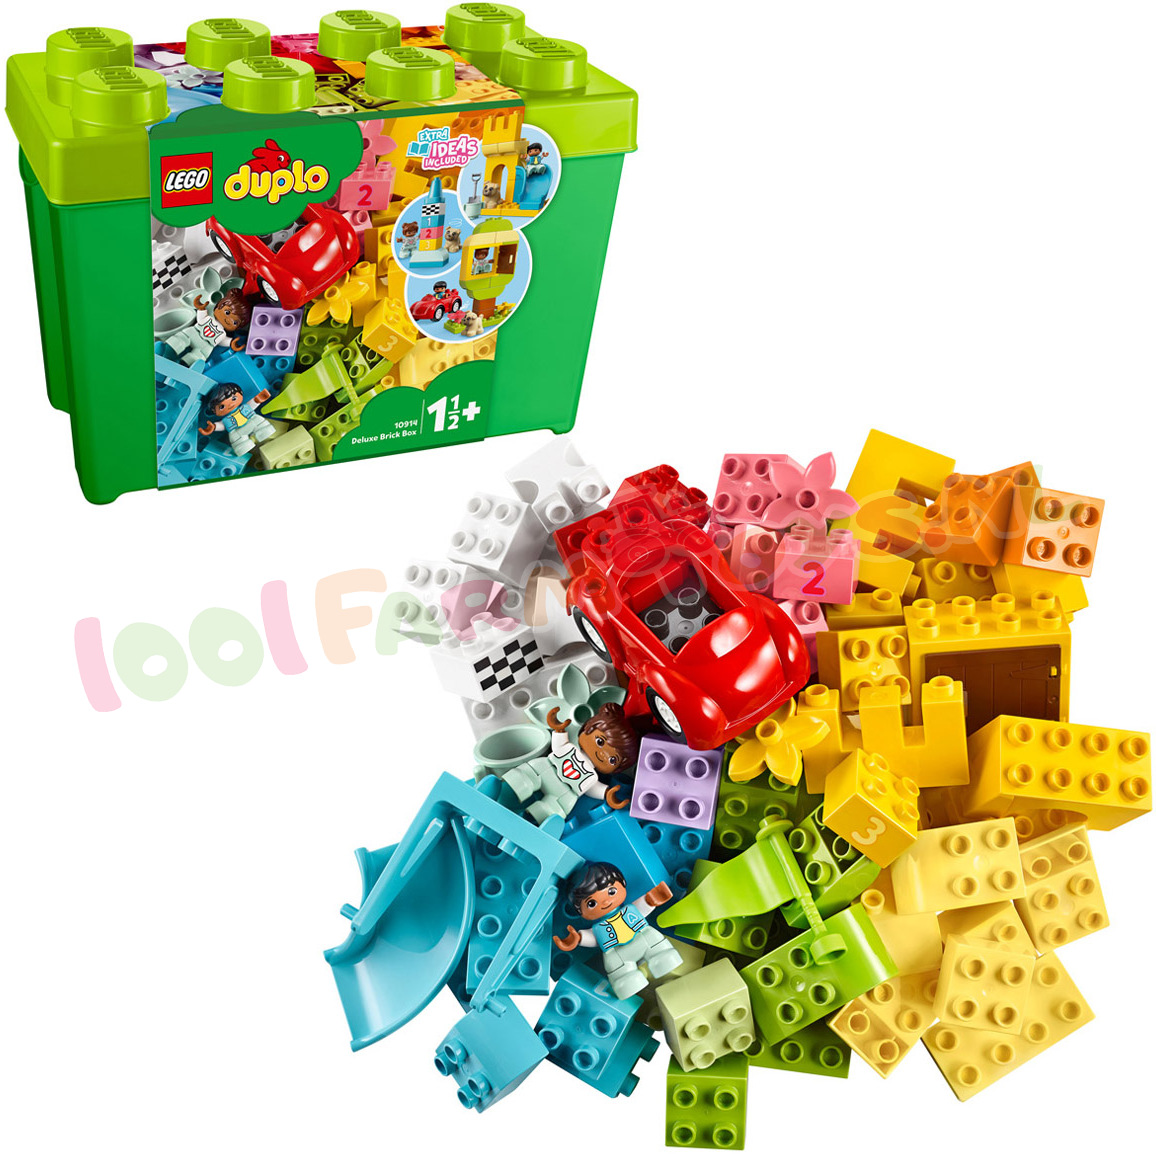 uitbarsting Keel ik zal sterk zijn LEGO DUPLO Luxe Mix Opbergdoos groot - 10914 - DUPLO - 1001Farmtoys  landbouwspeelgoed - Stimuleer de creativiteit en talloze  ontwikkelingsvoordelen met